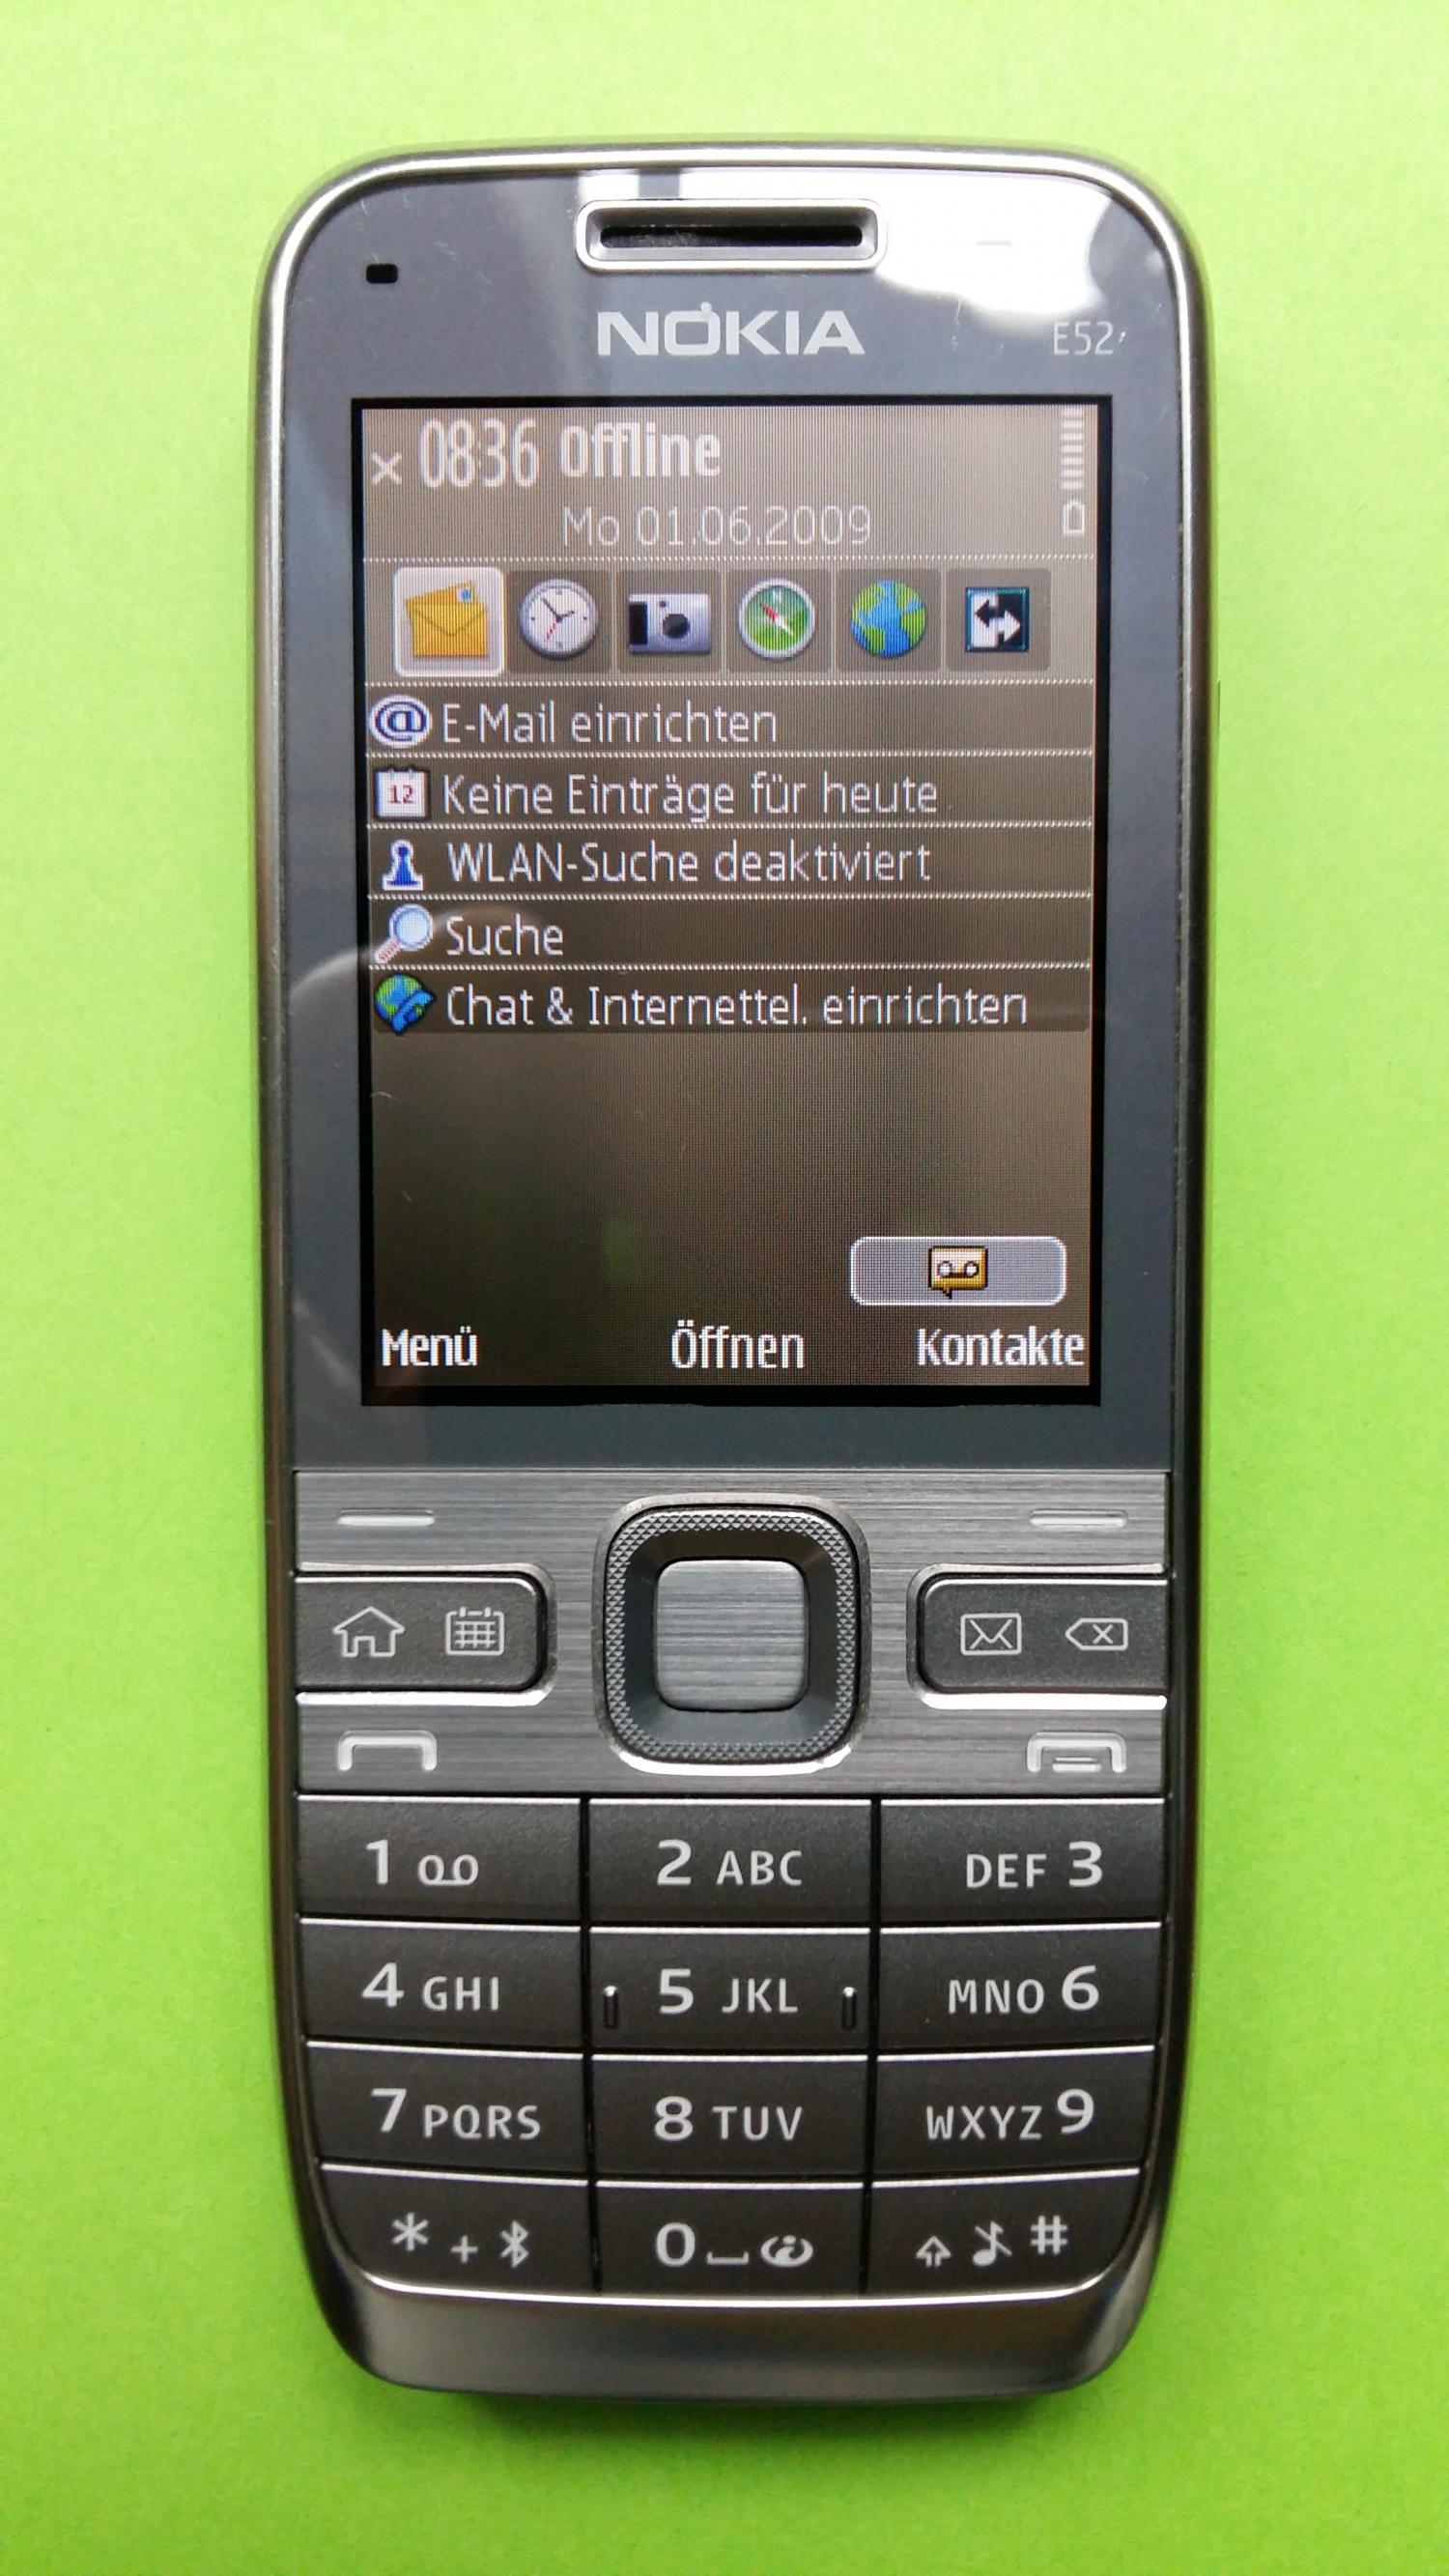 image-7339173-Nokia E52-1 (2)1.jpg